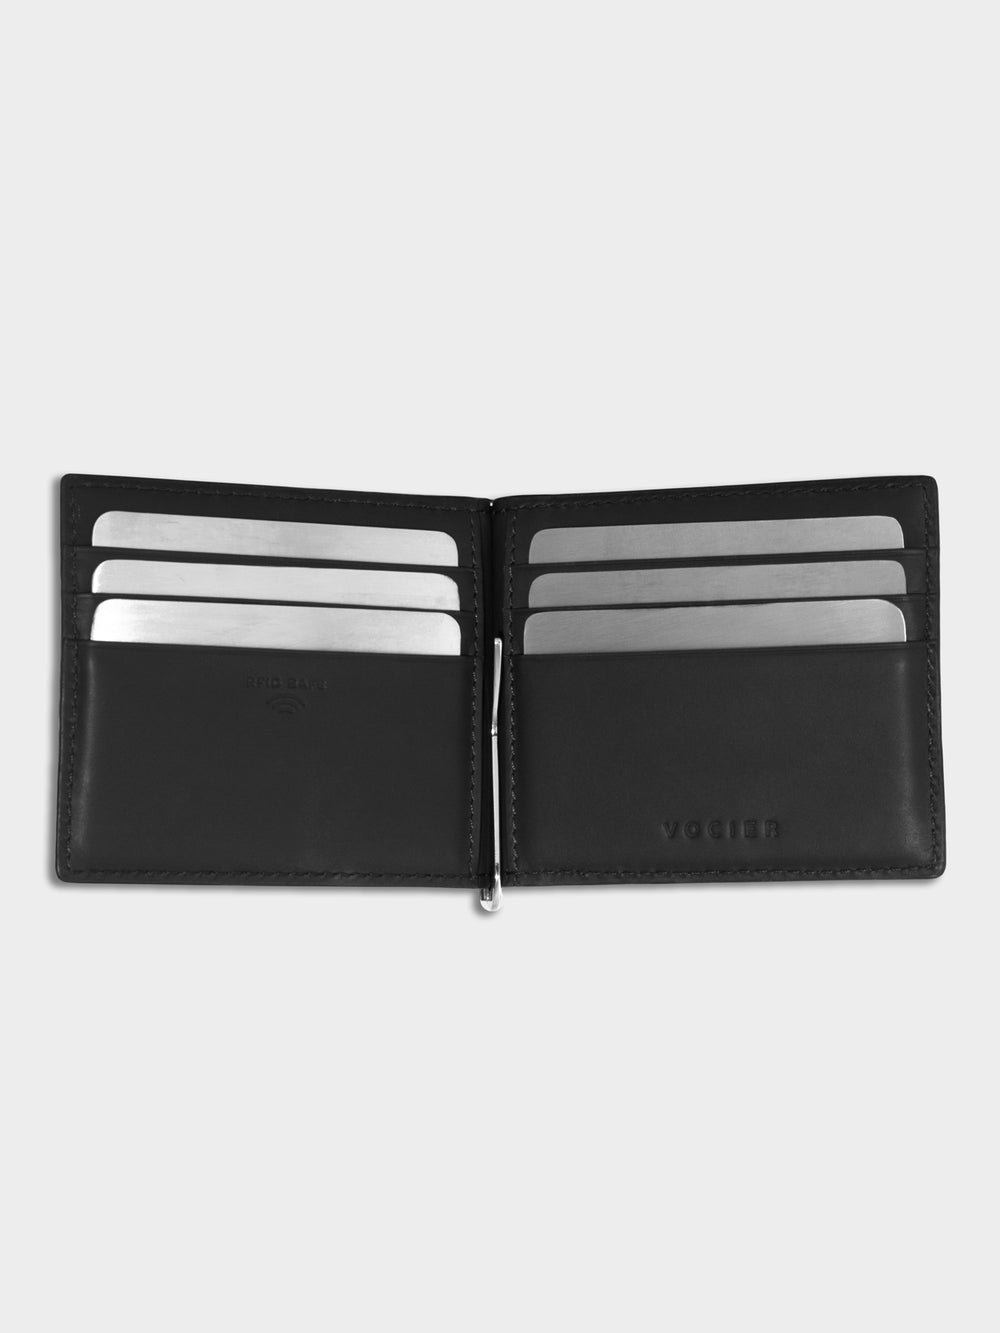 VOCIER Card Holder, Minimalist Wallet, RFID